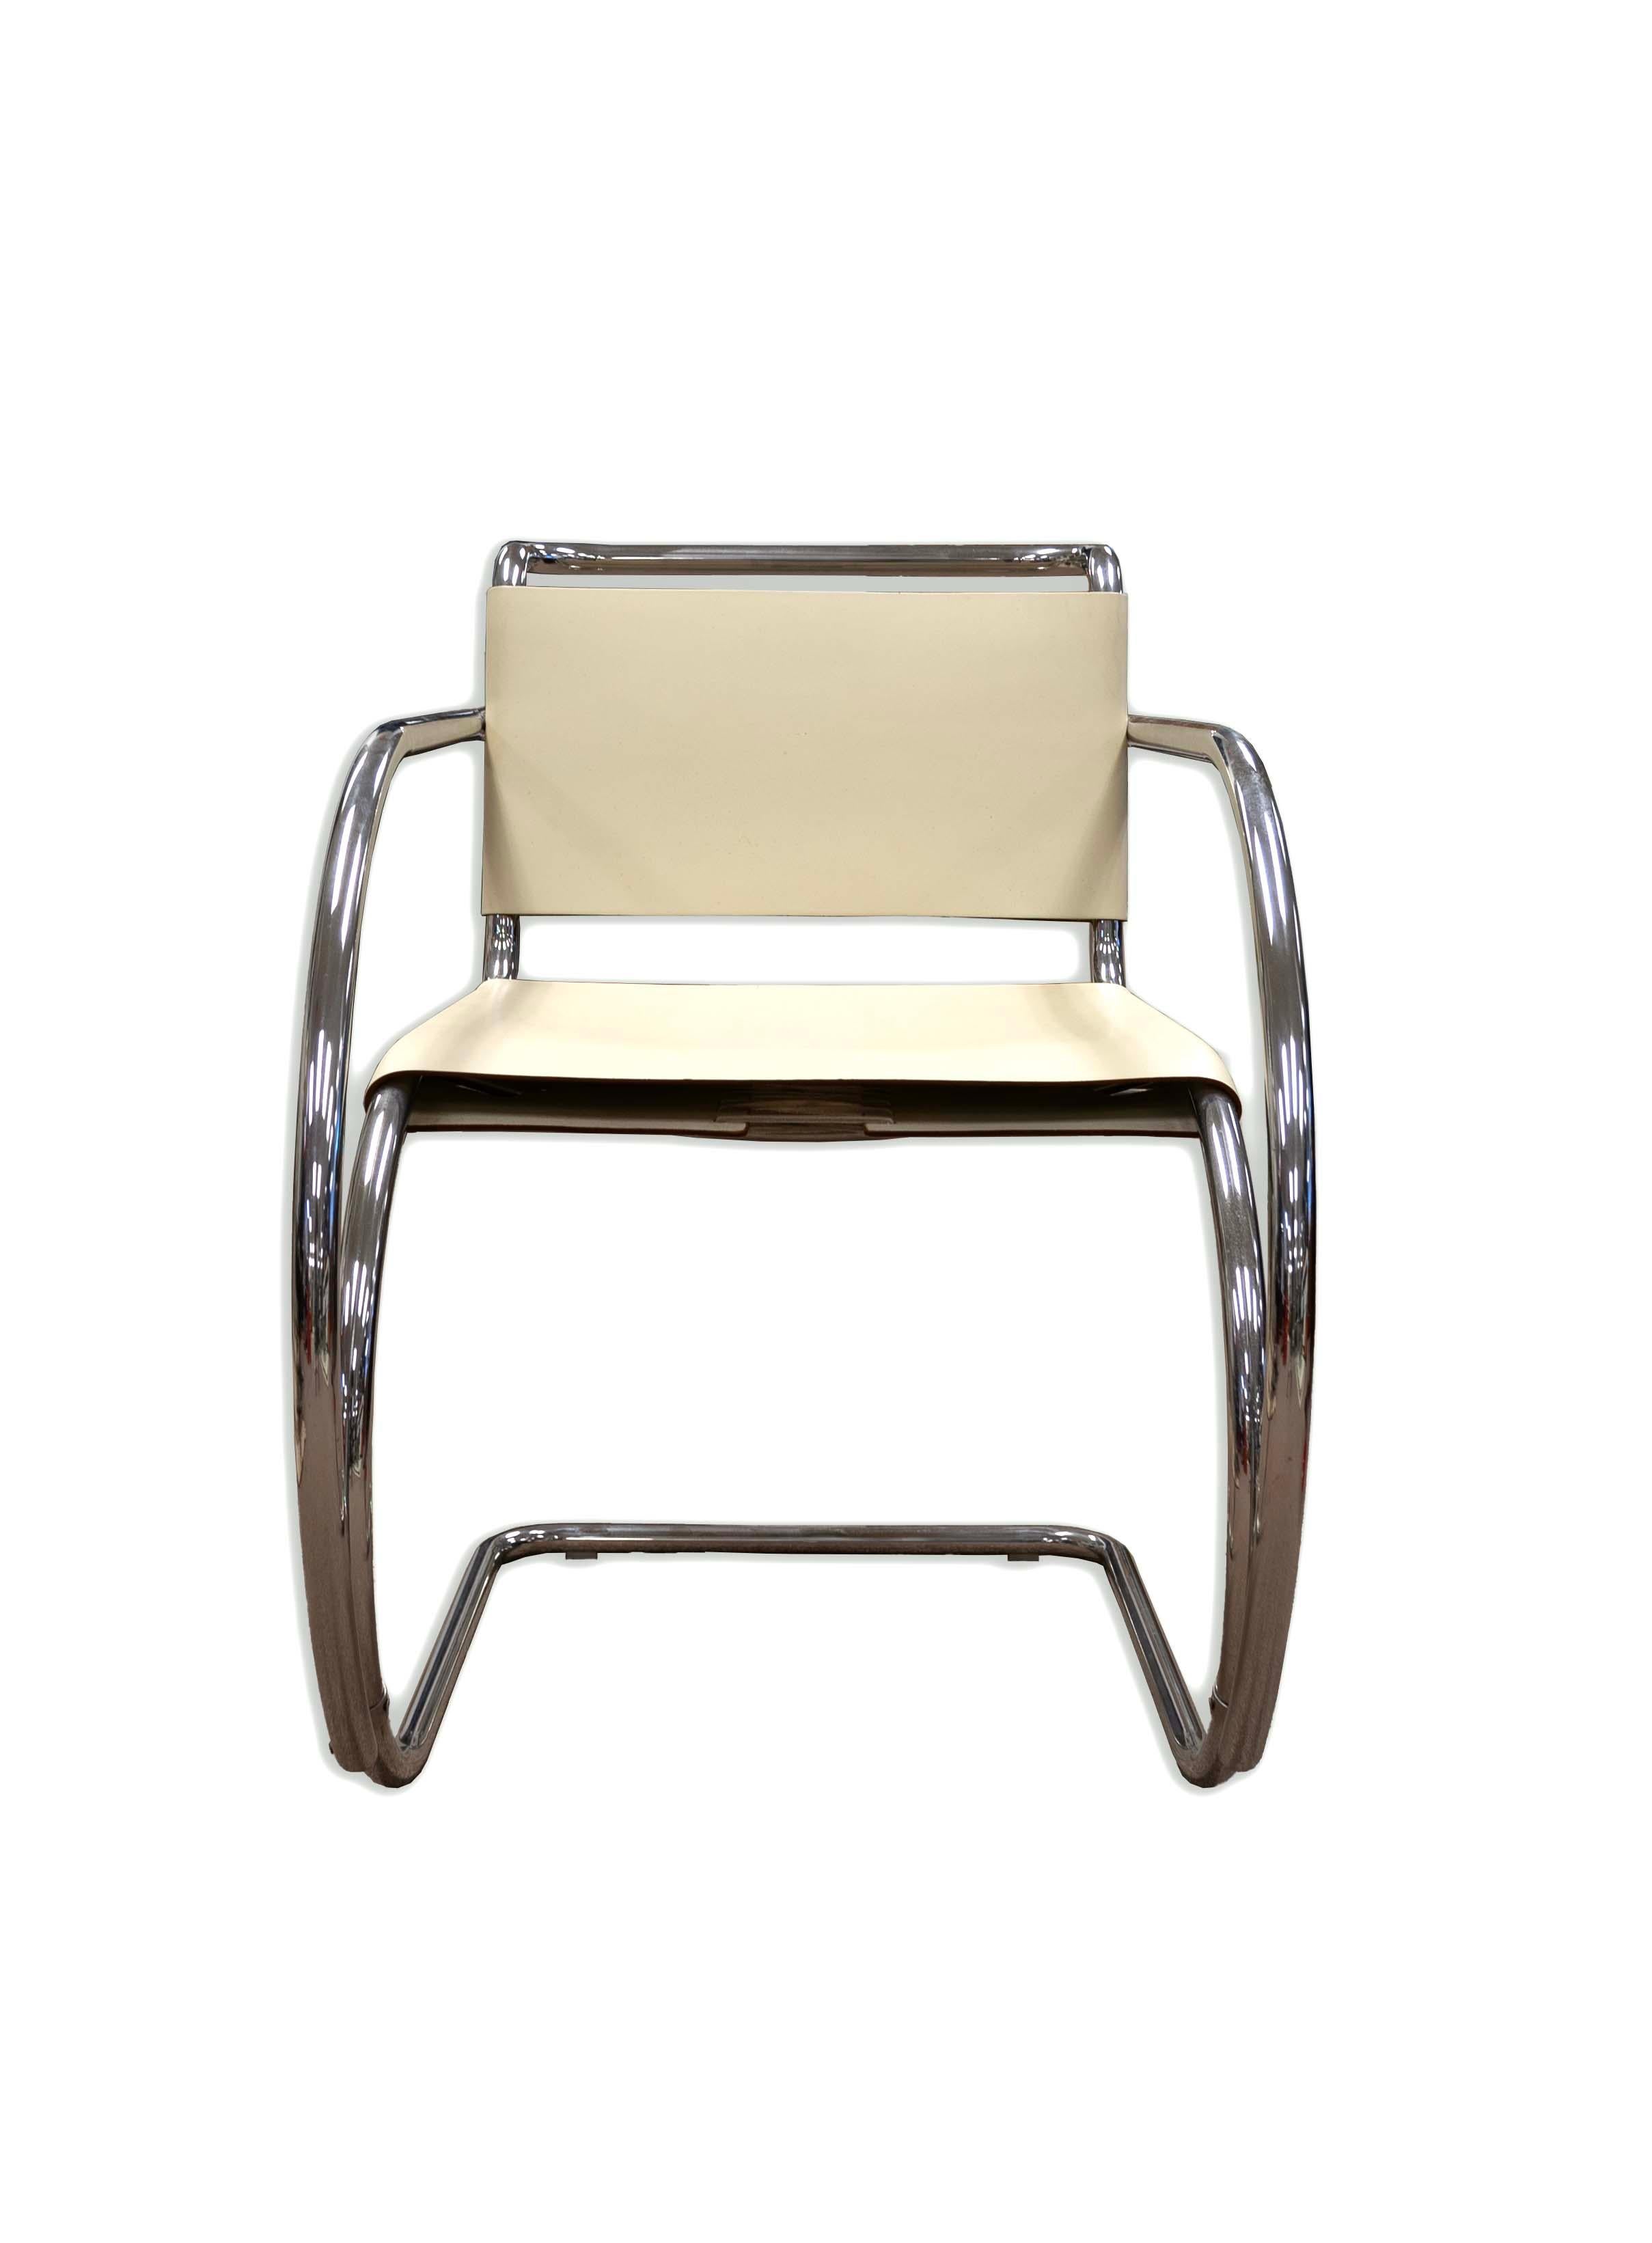 Élégante et intemporelle, cette chaise à accoudoir tubulaire en chrome de Mies van der Rohe est un chef-d'œuvre du design moderne du milieu du siècle dernier. Les courbes gracieuses de la chaise et le cadre chromé réfléchissant créent une sensation